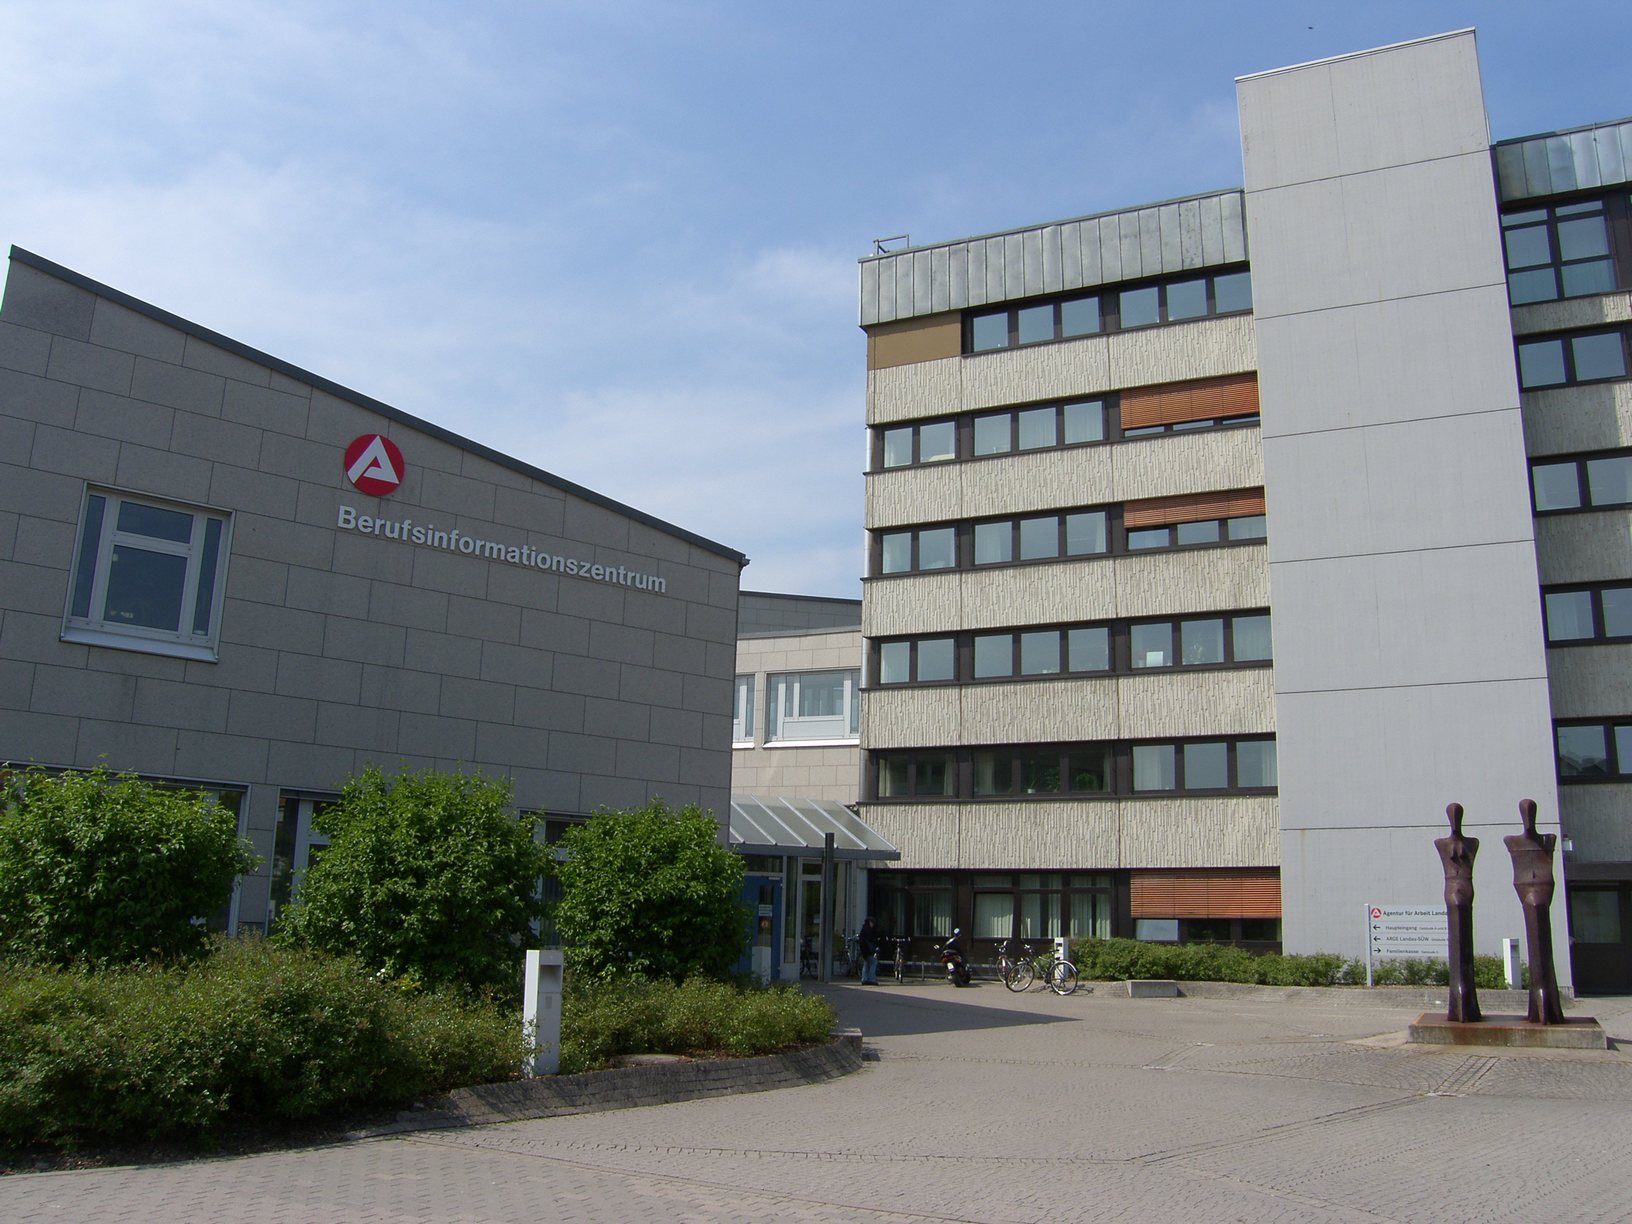 Agentur für Arbeit in Landau. Foto: Pfalz-Express/Ahme